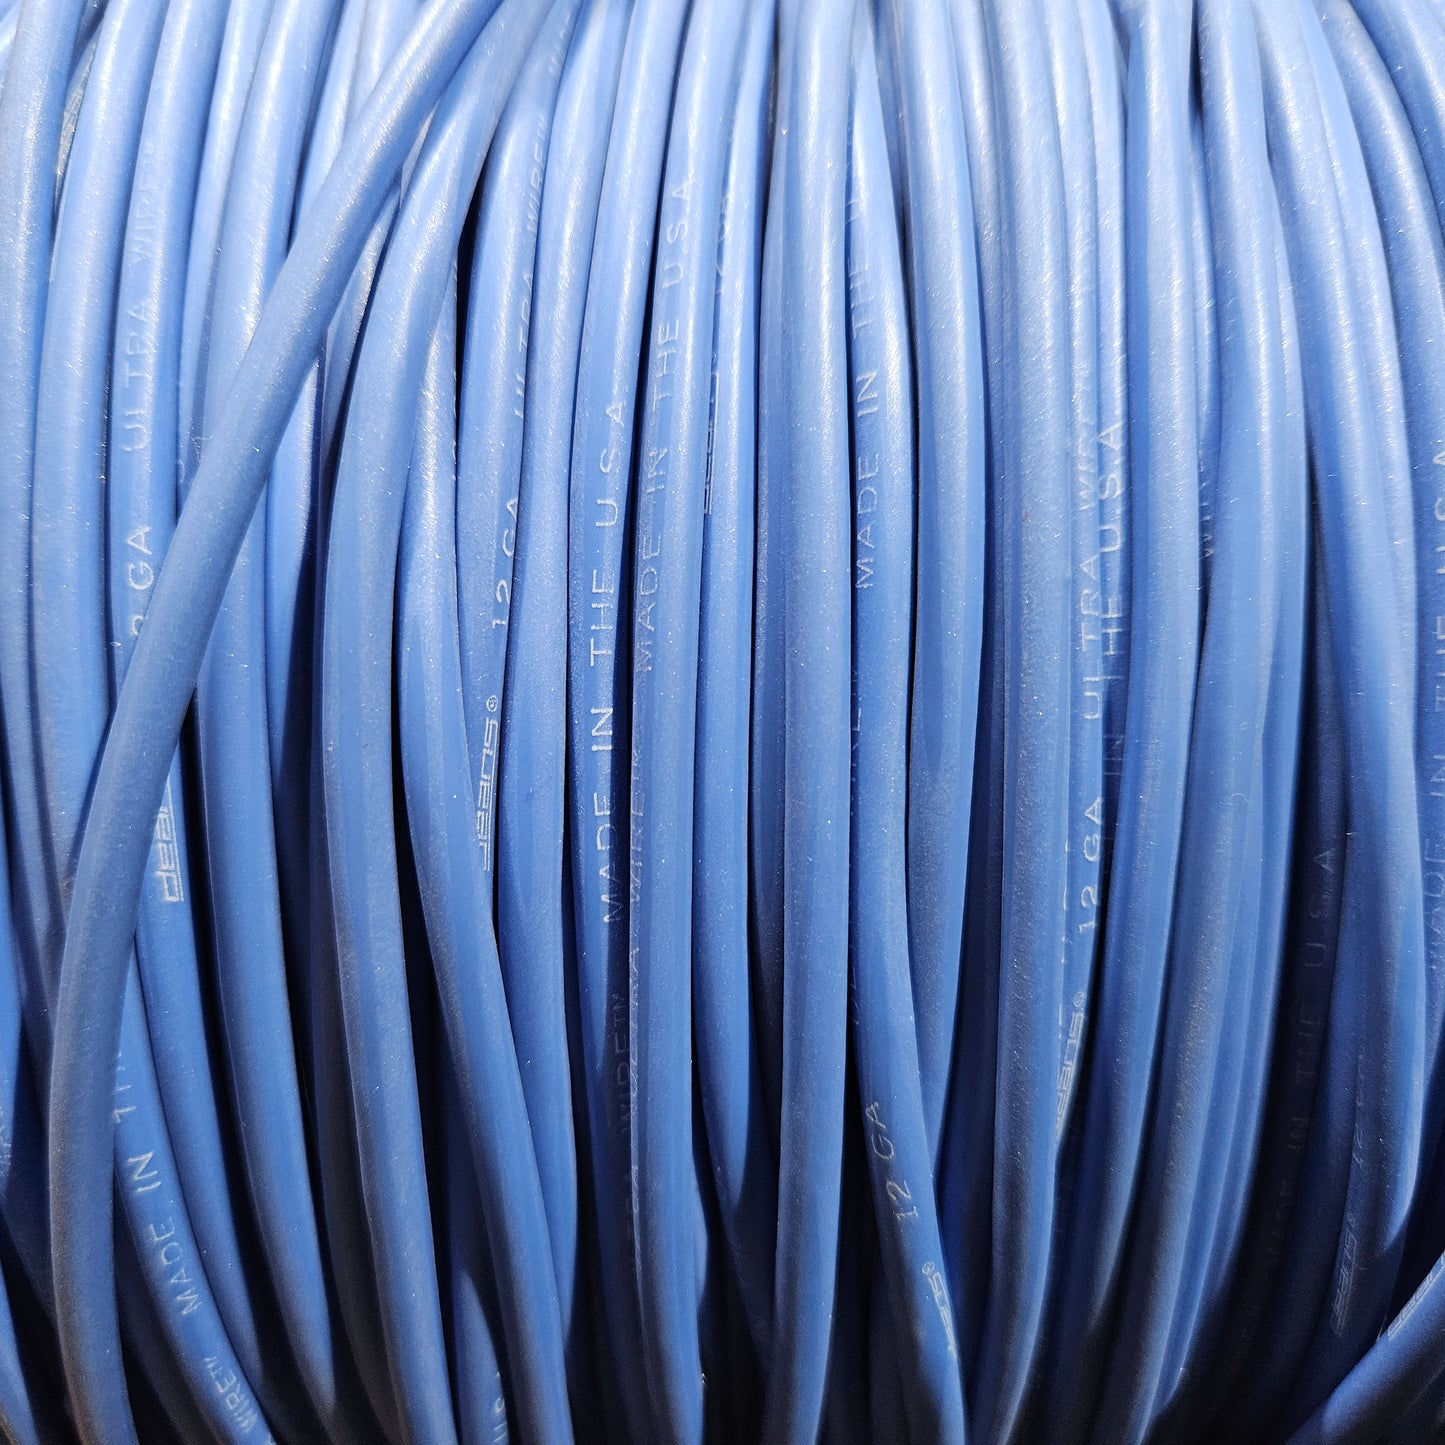 6' Blue 12 Gauge Ultra Wire